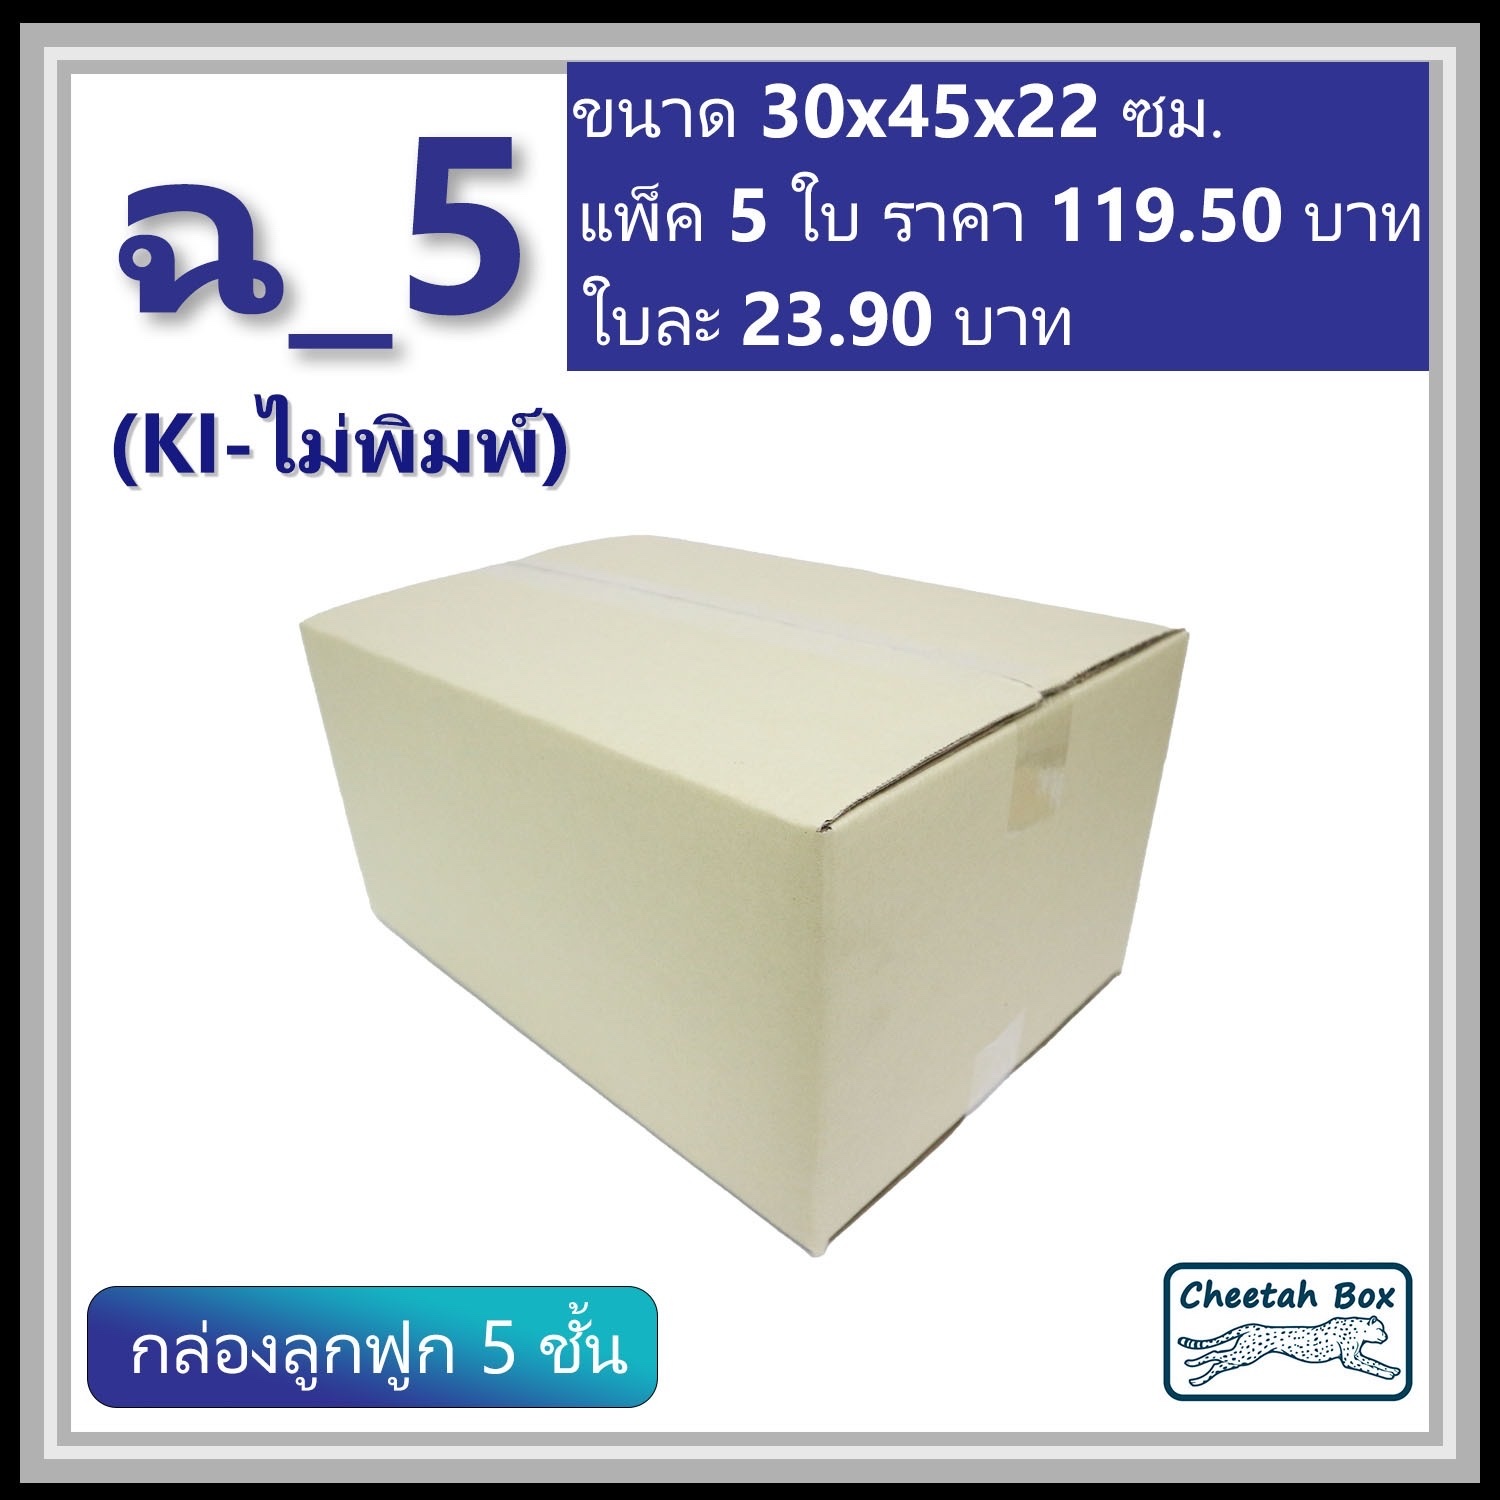 กล่องพัสดุ ฉ_5 ไม่พิมพ์ (Post Box) ลูกฟูก 5 ชั้น ขนาด 30W x 45L x 22H cm.